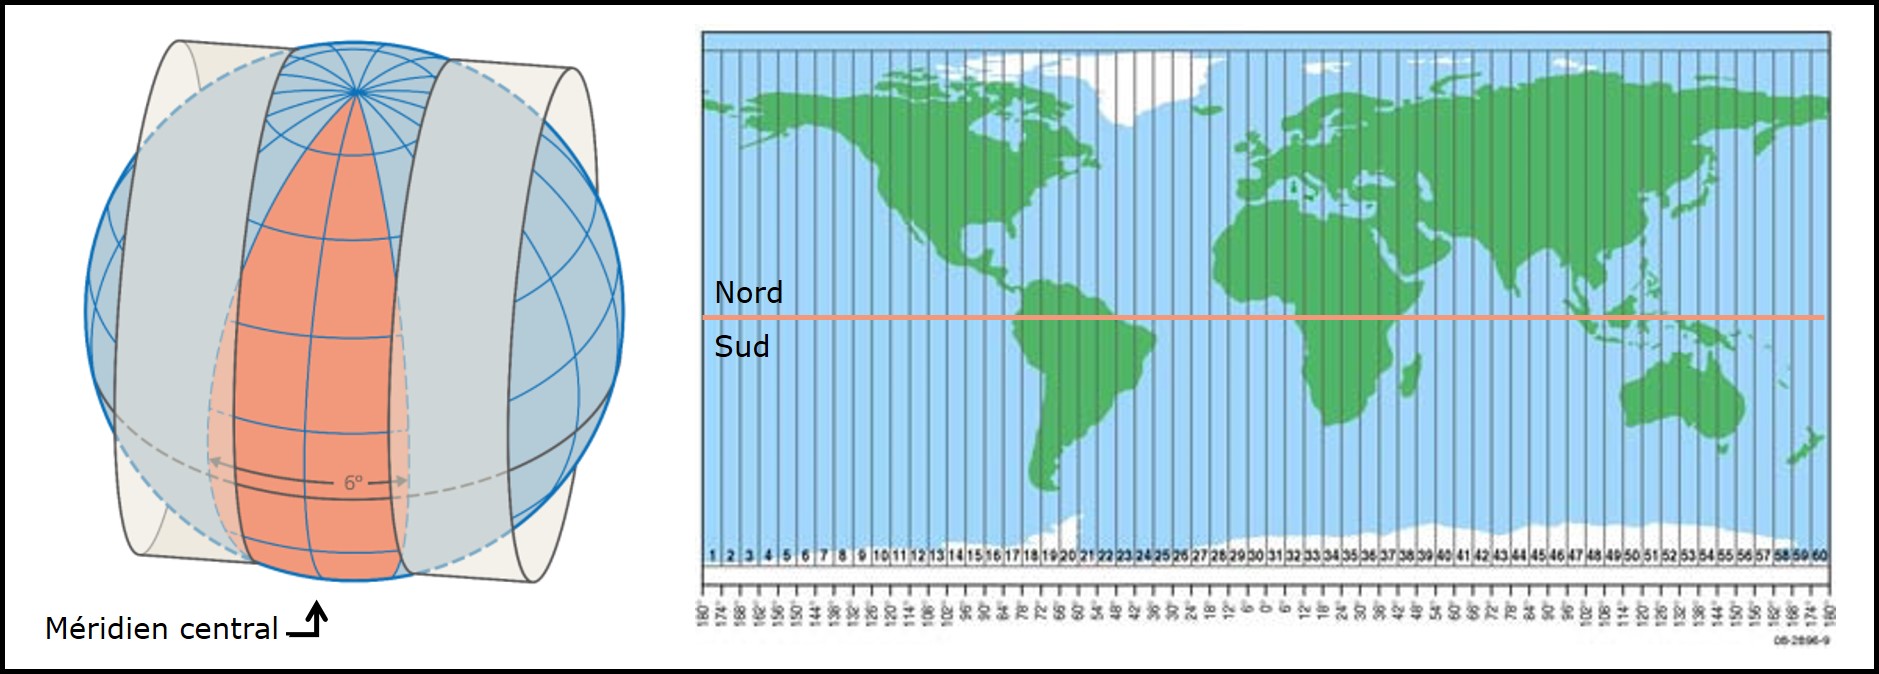 Projection transverse universelle de Mercator. Gauche : le globe est découpé en tranches de 6$^{\circ}$, 3$^{\circ}$ de part et d’autre d’un méridien central (source : https://www.swisstopo.admin.ch/). Droite : La surface entière de la Terre est représentée par 60 zones (source : https://www.icsm.gov.au/). 